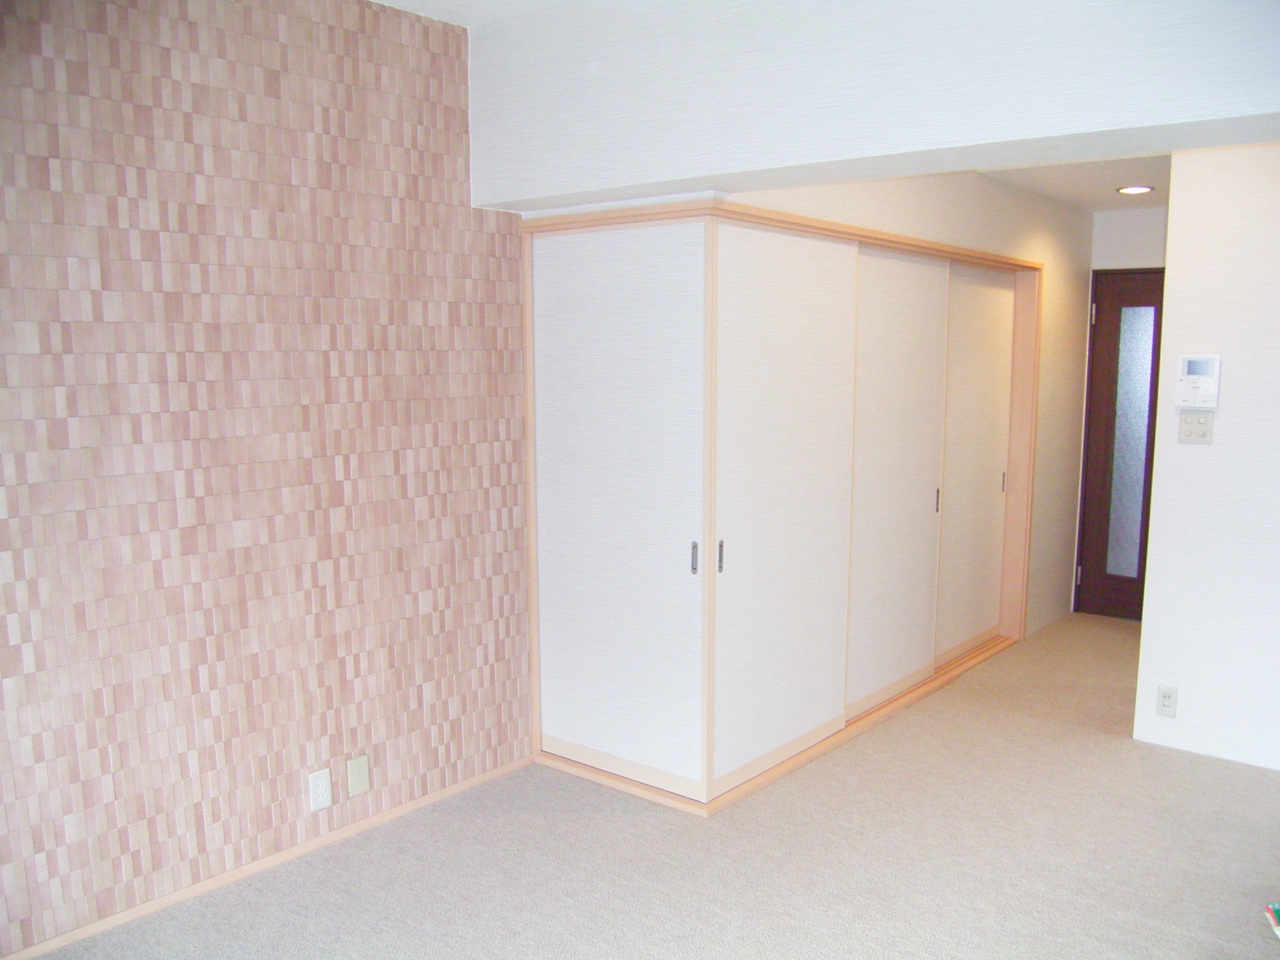 和室とLDKの間の壁を取り払って、L字型に3本引戸を取付しました。